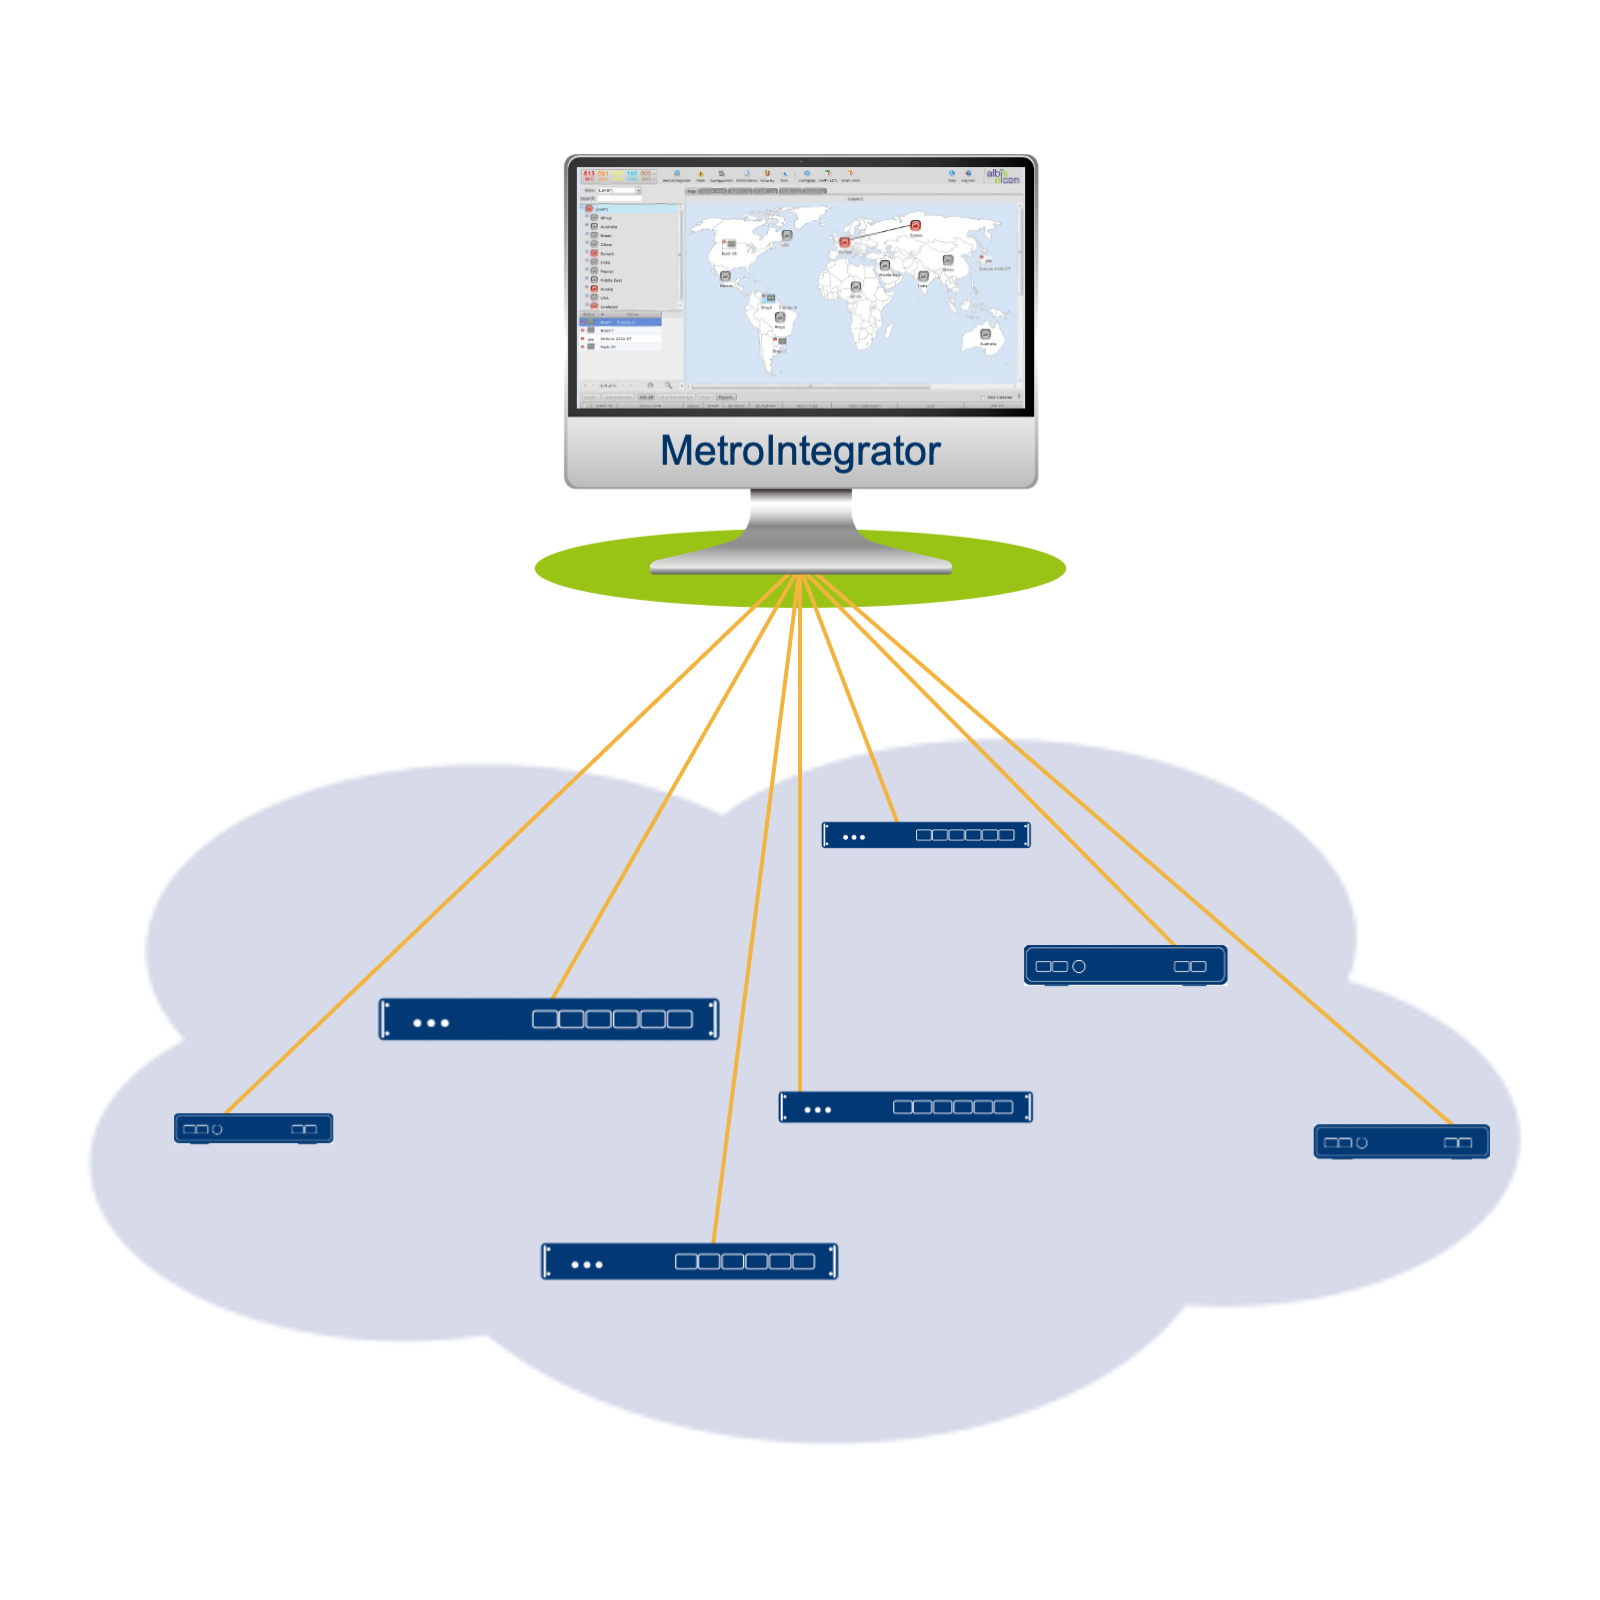 Удаленное управление компьютерами в сети. VPN ikev2/IPSEC Psk сервера. Виртуализация серверов. Схема виртуализации серверов. Миграция сервера.